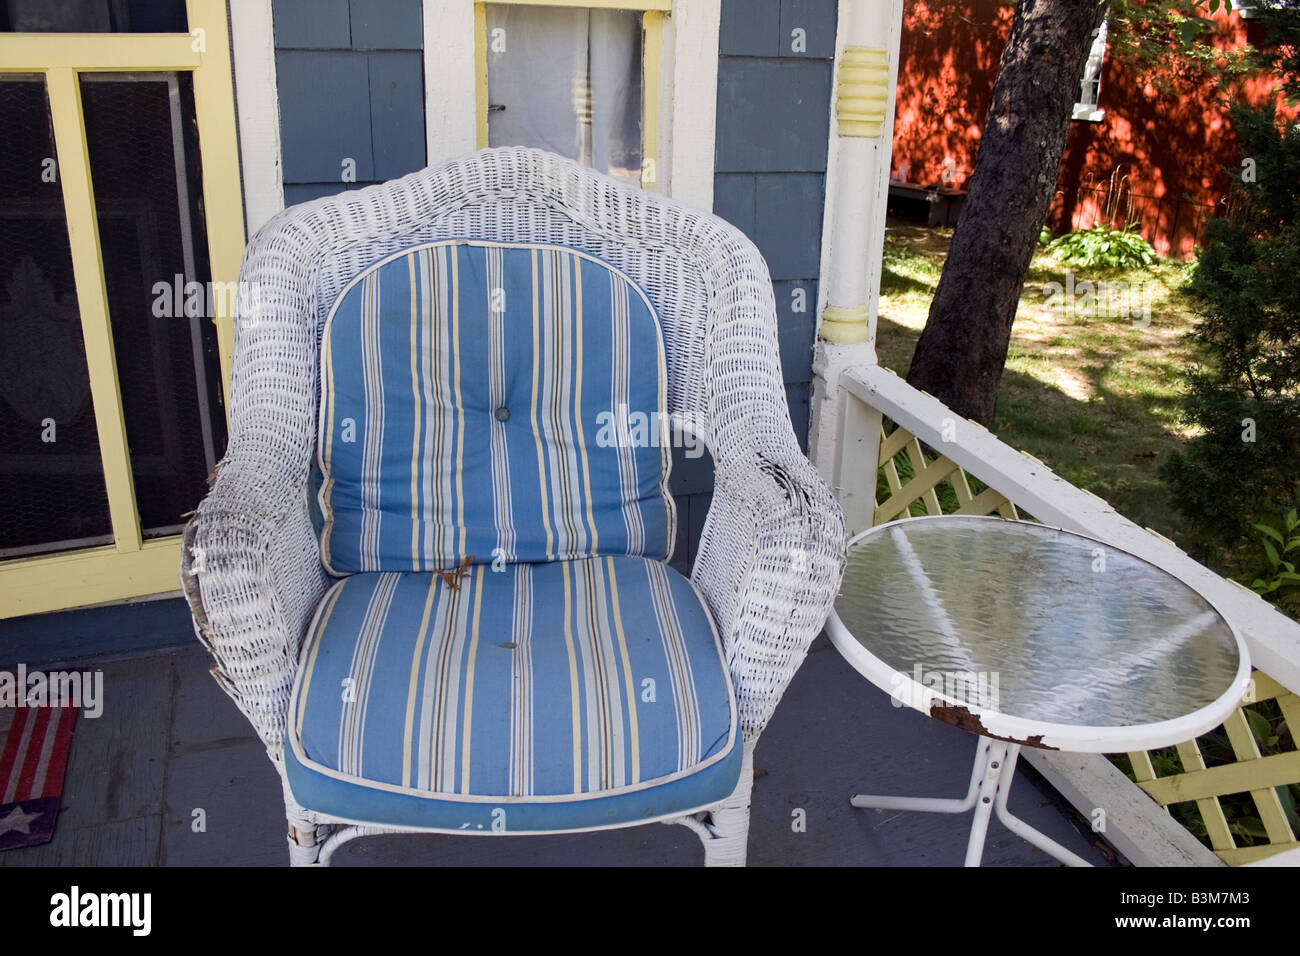 4 sillas Ellis silla de comedor terciopelo azul teal pata natural